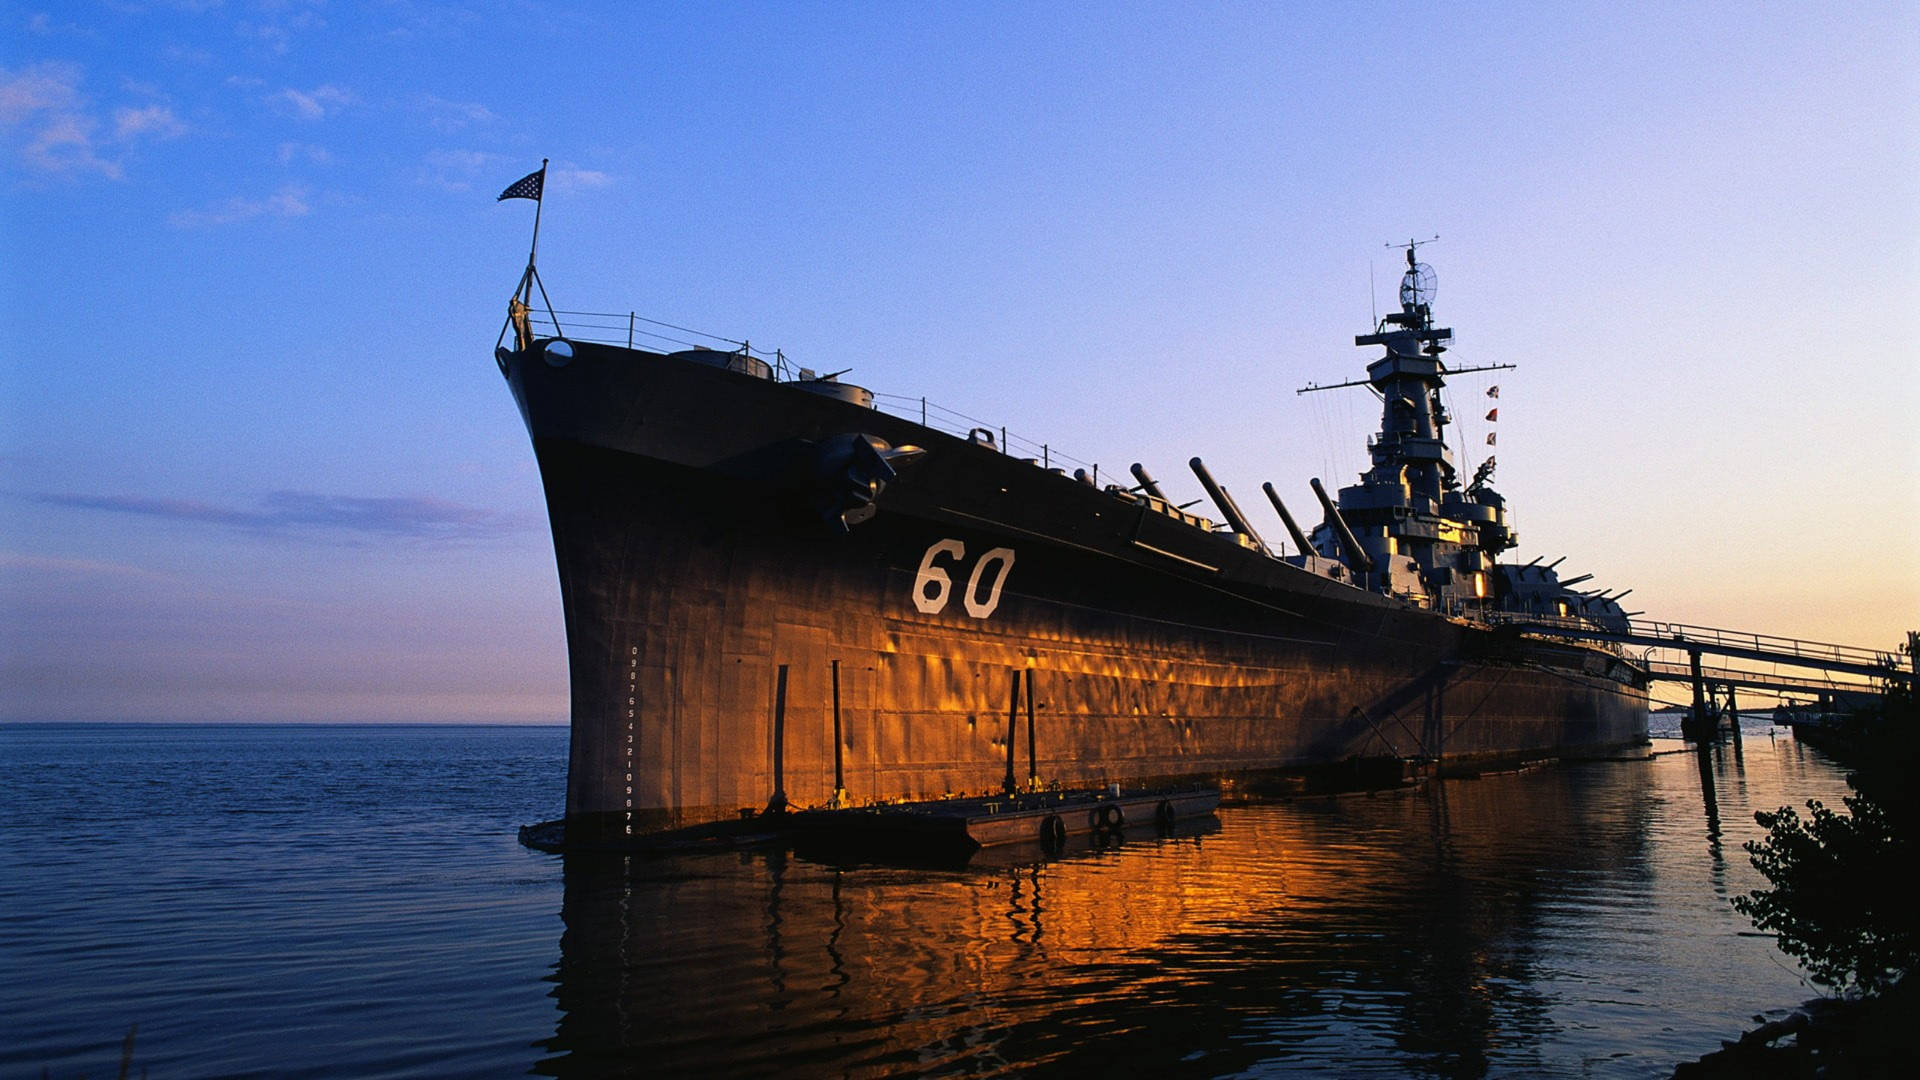 Uss Alabama Battleship Sunset Background